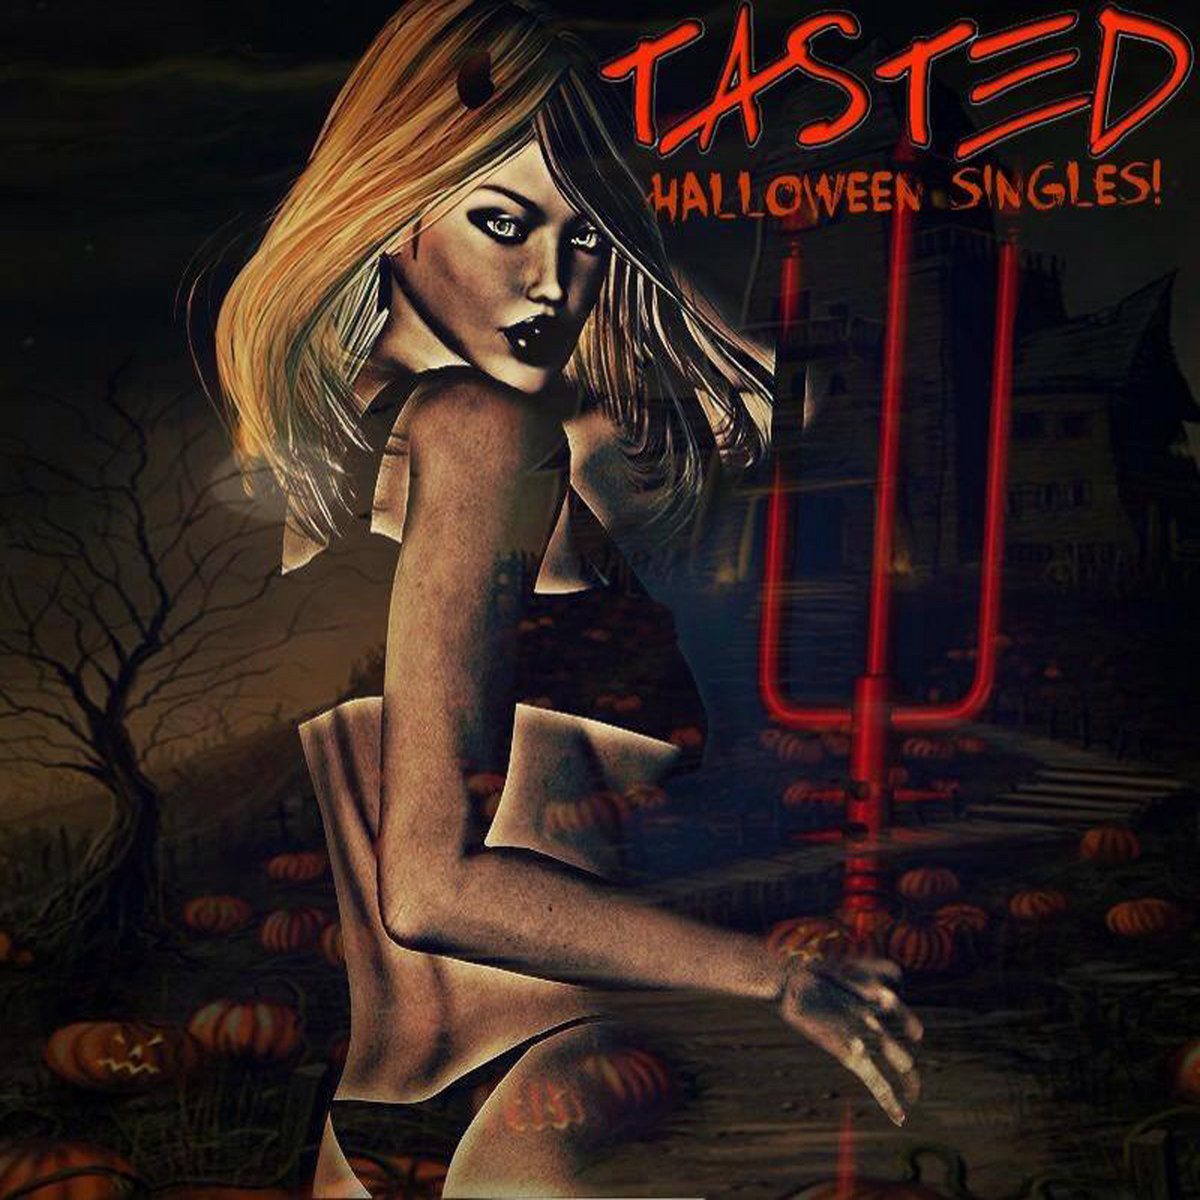 Tasted 2014 - Halloween Singles